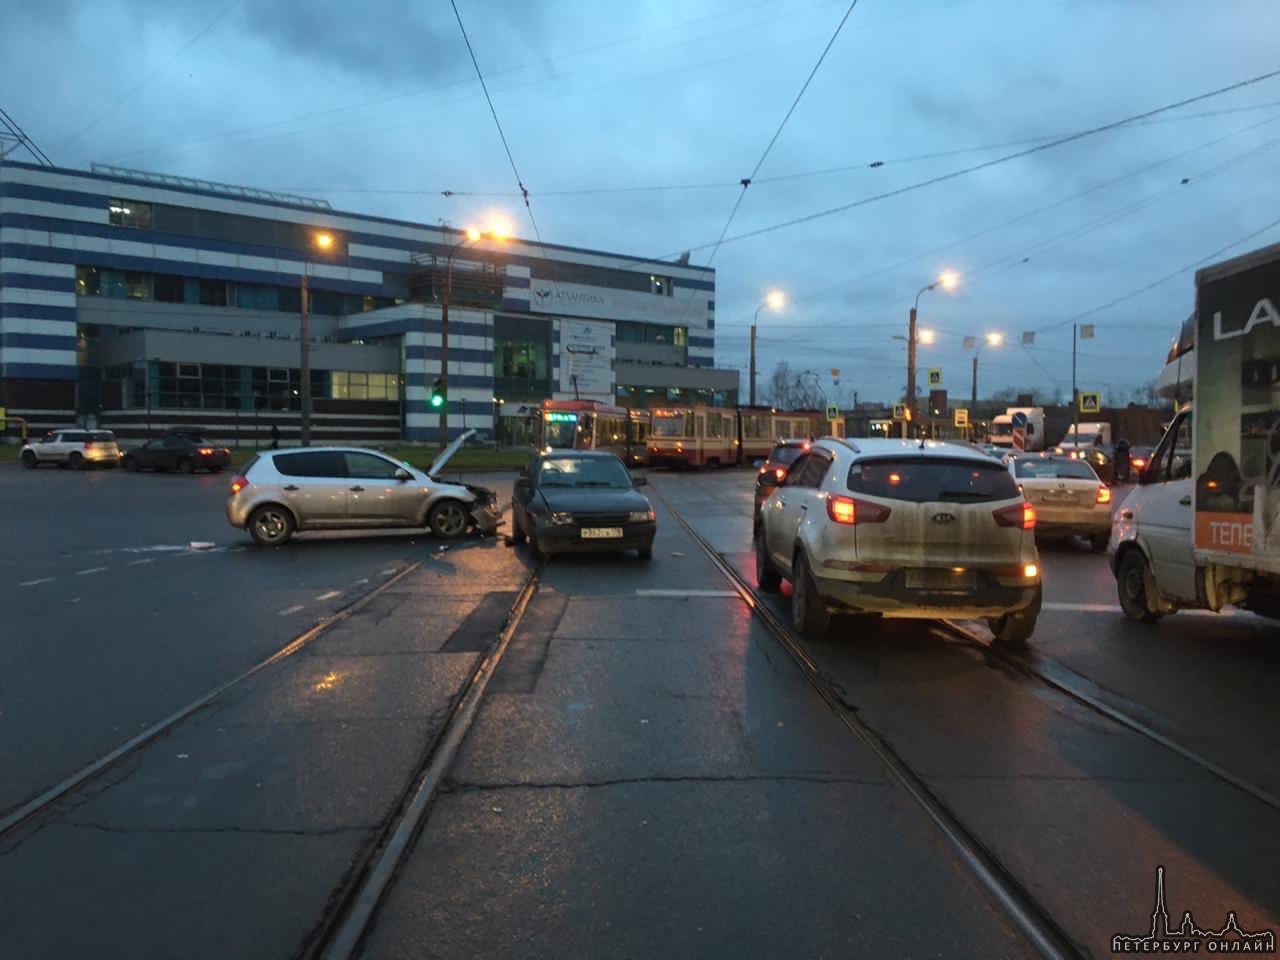 Прошу помощи у очевидцев, кто видел аварию на перекрестке Обуховской Обороны 142 и Шлиссельбургского...